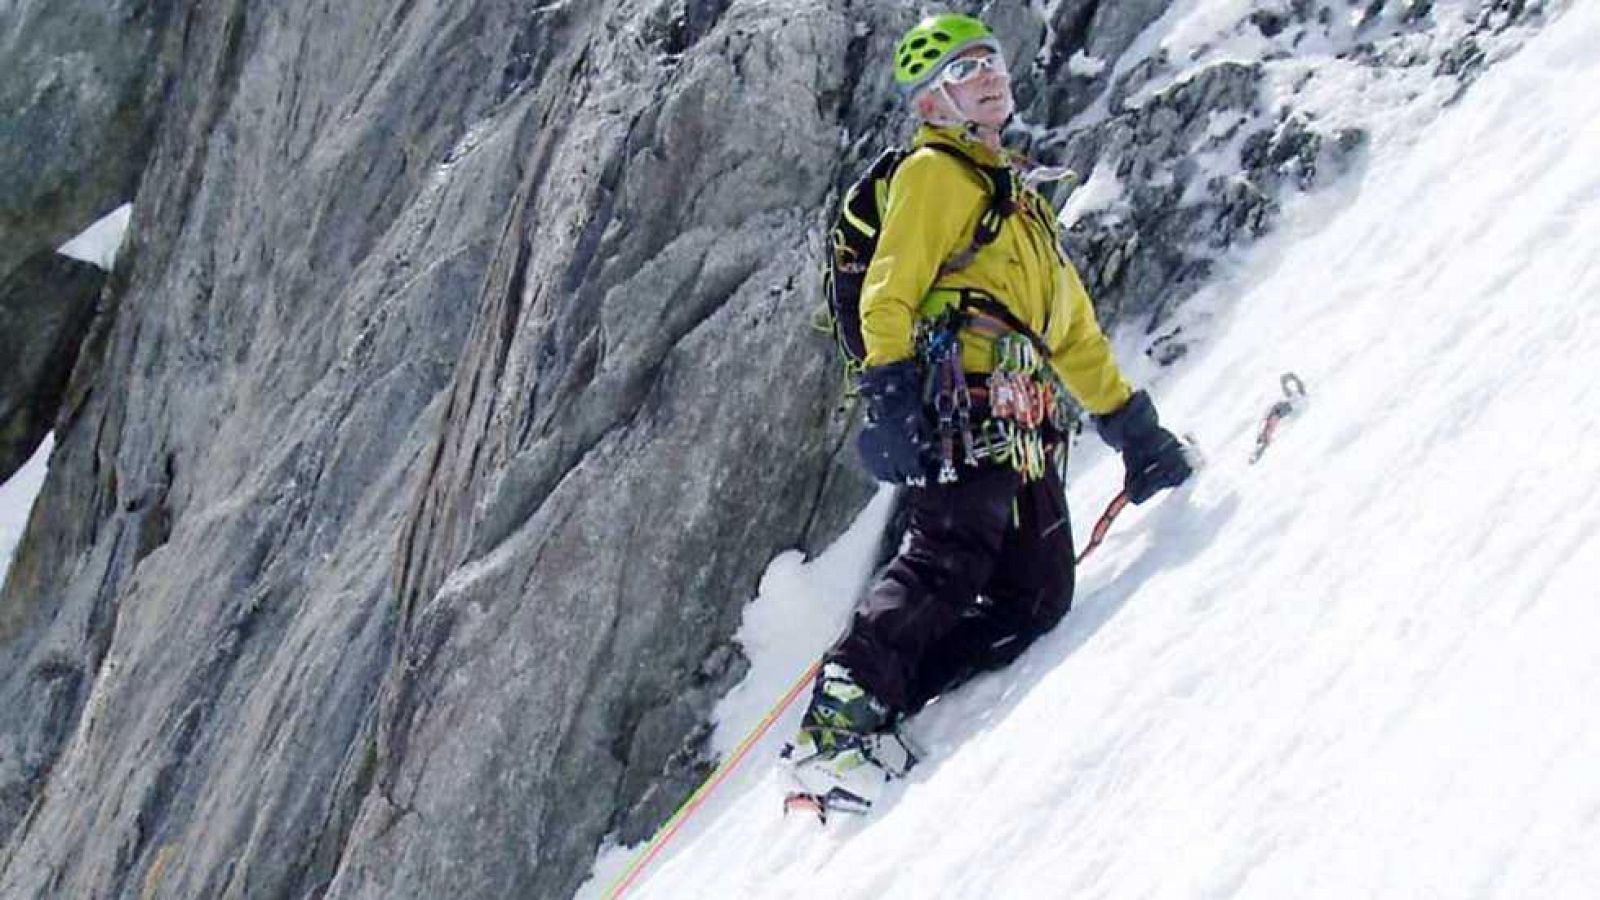 Al filo de lo imposible - Adagio de un alpinista